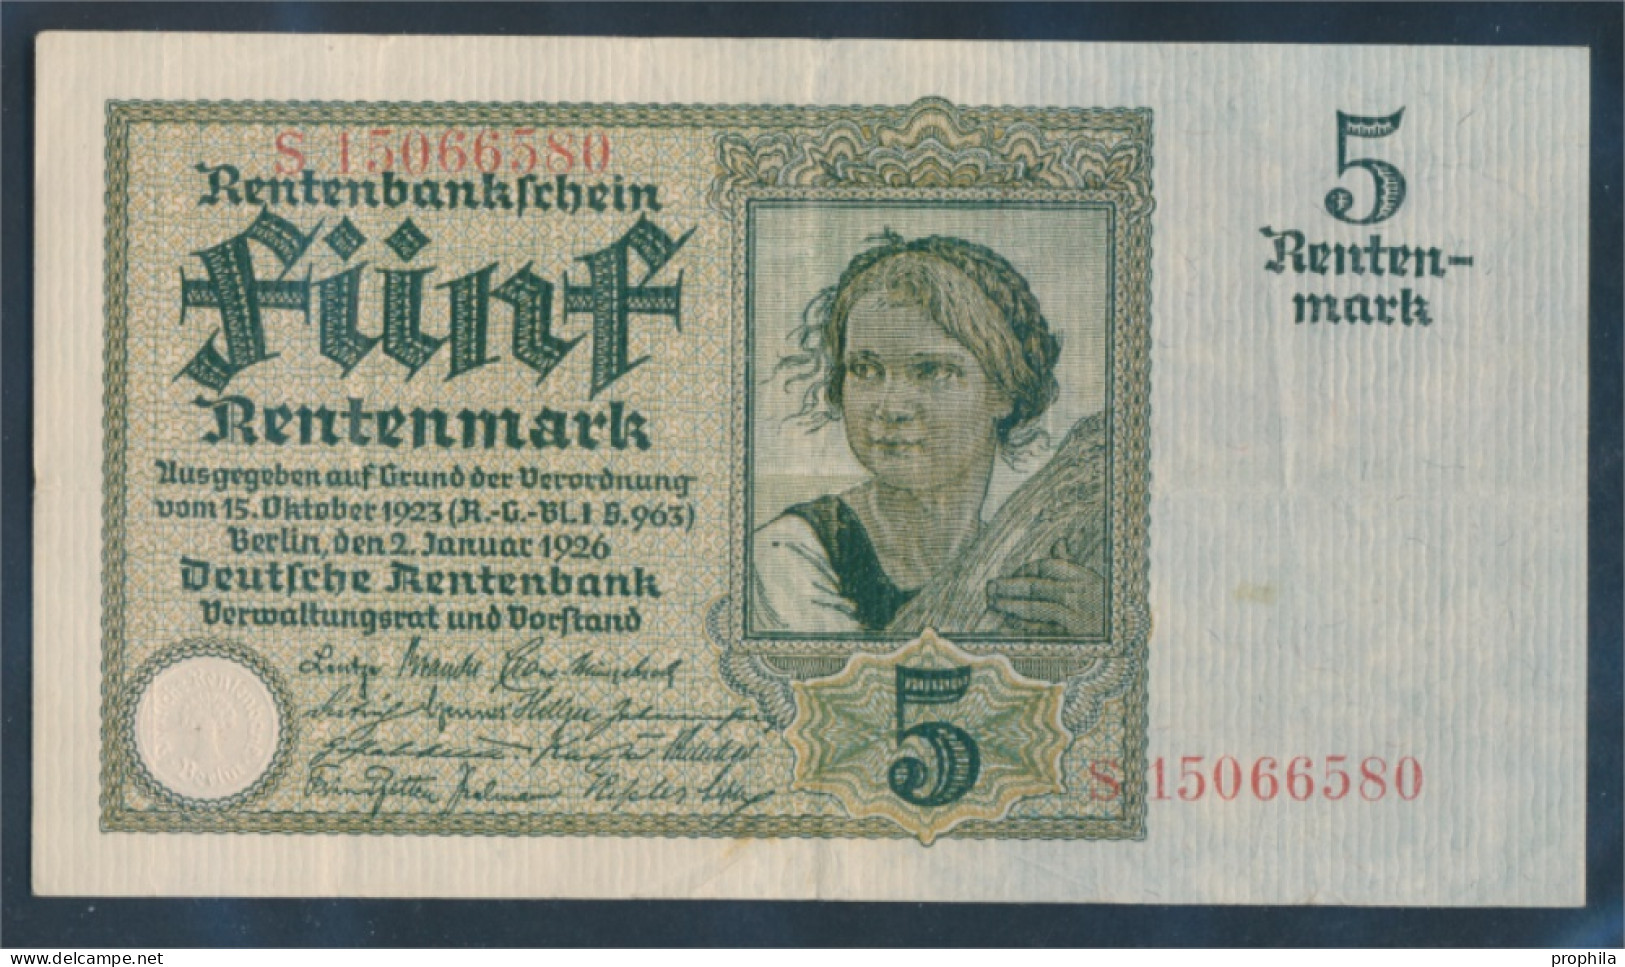 Deutsches Reich Rosenbg: 164b, 8stellige Kontrollnummer Gebraucht (III) 1926 5 Rentenmark (10288374 - 5 Rentenmark